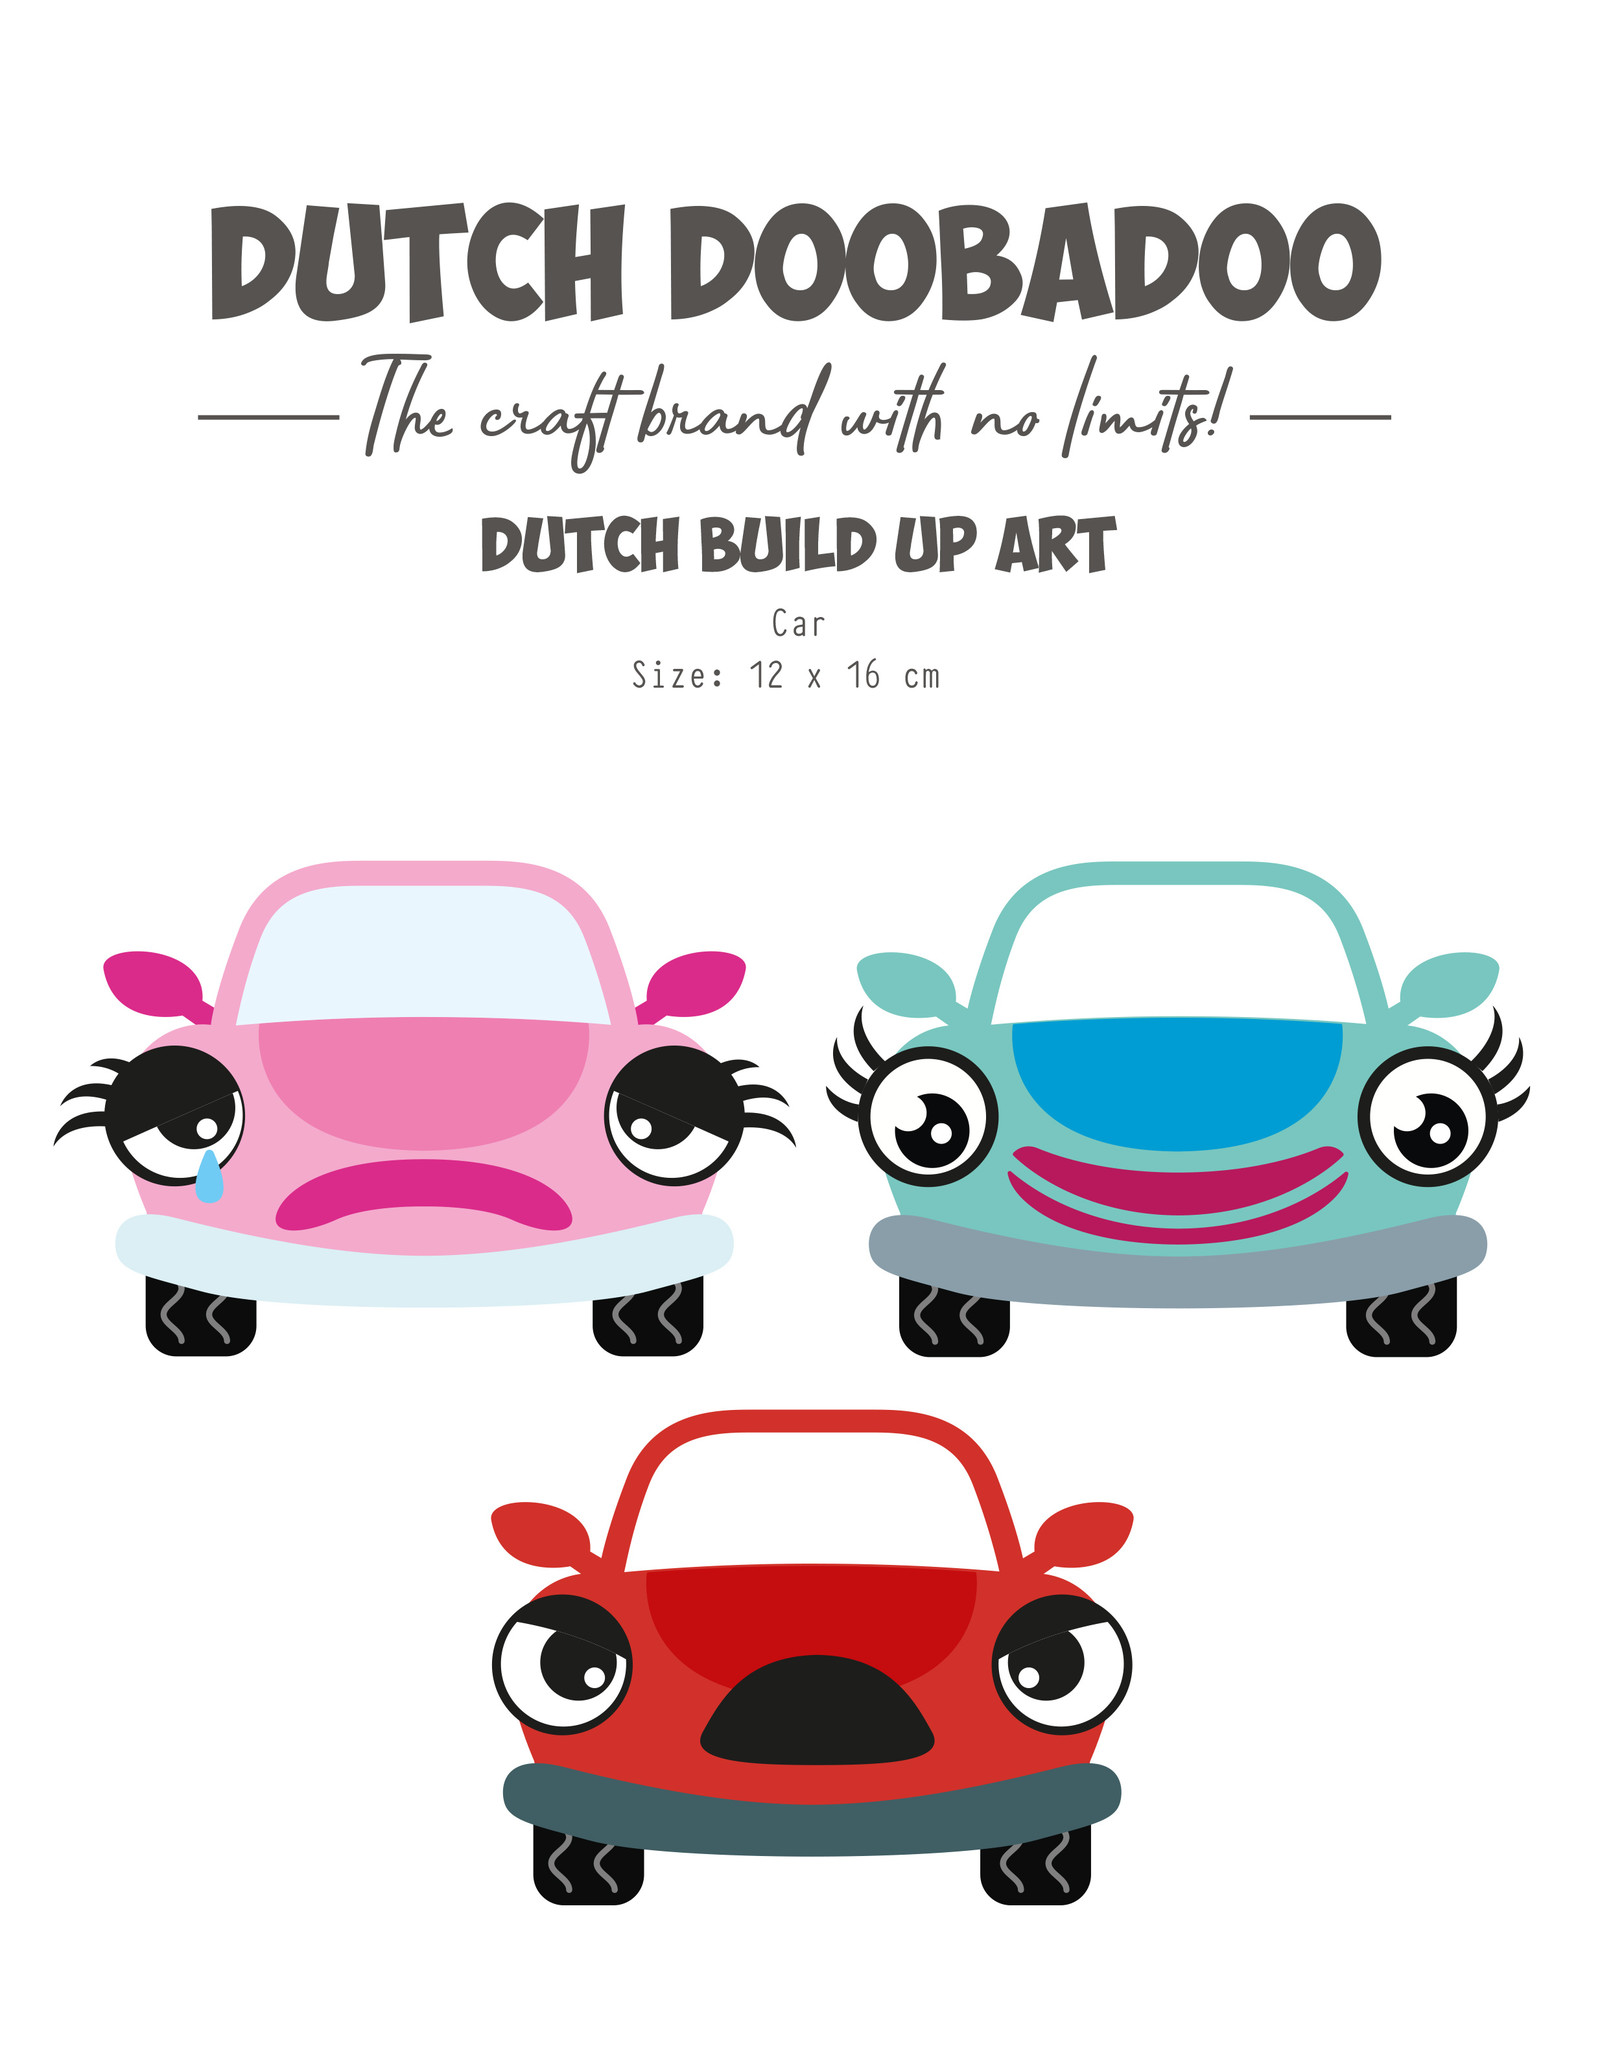 Dutch Doobadoo DDBD Build Up Art Car  A5